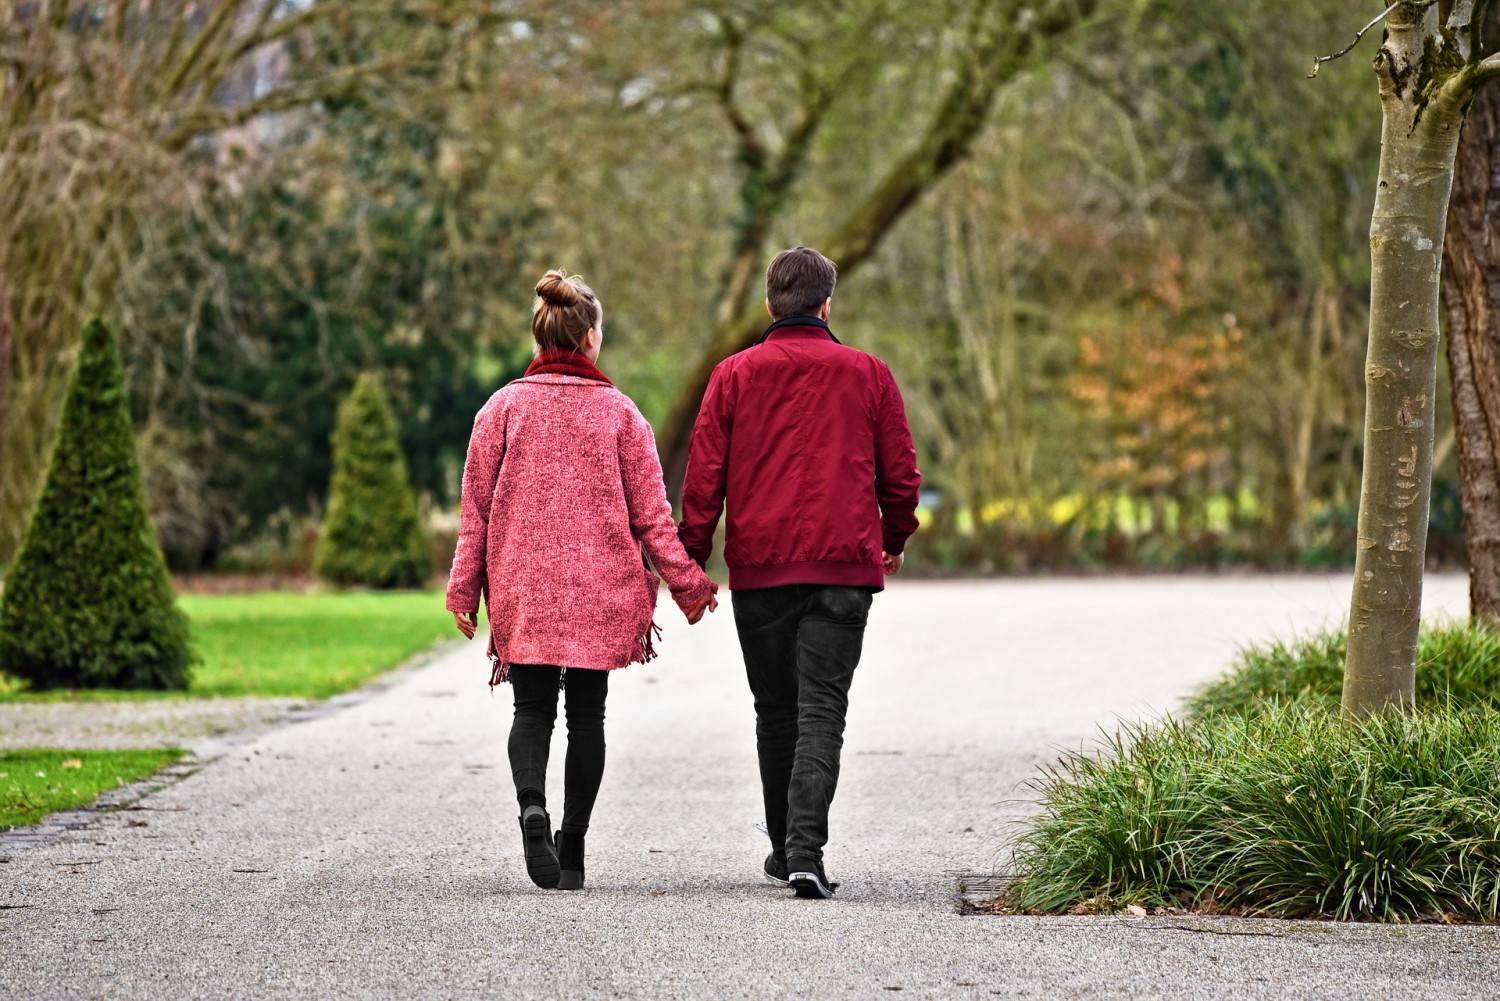 Man en vrouwen lopen hand in hand door het park. Beiden hebben een rode jas aan. De vrouw heeft haar haar in een knotje.